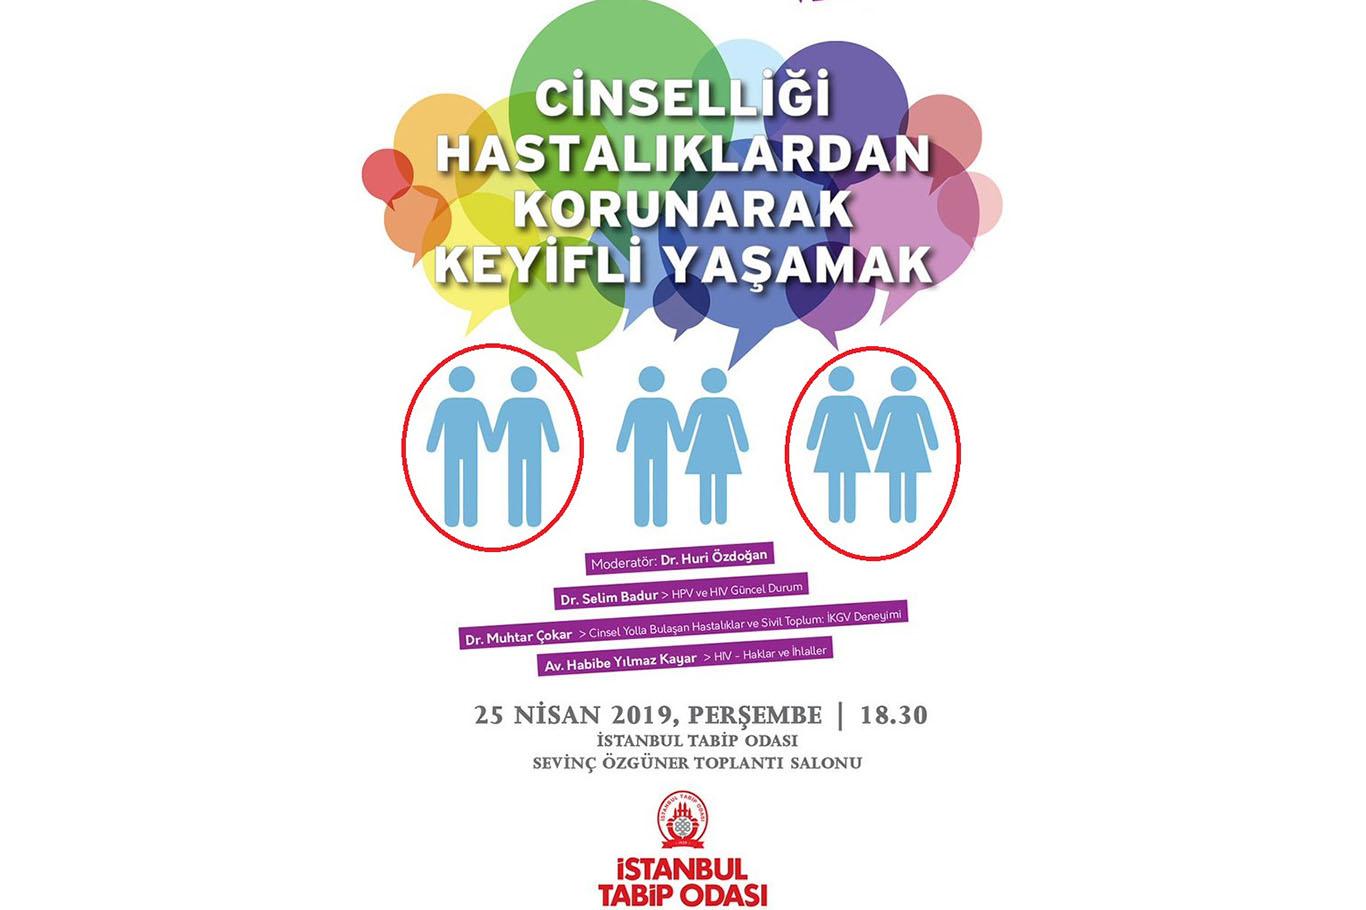 İstanbul Tabip Odasından iğrenç "eşcinsellik" afişi